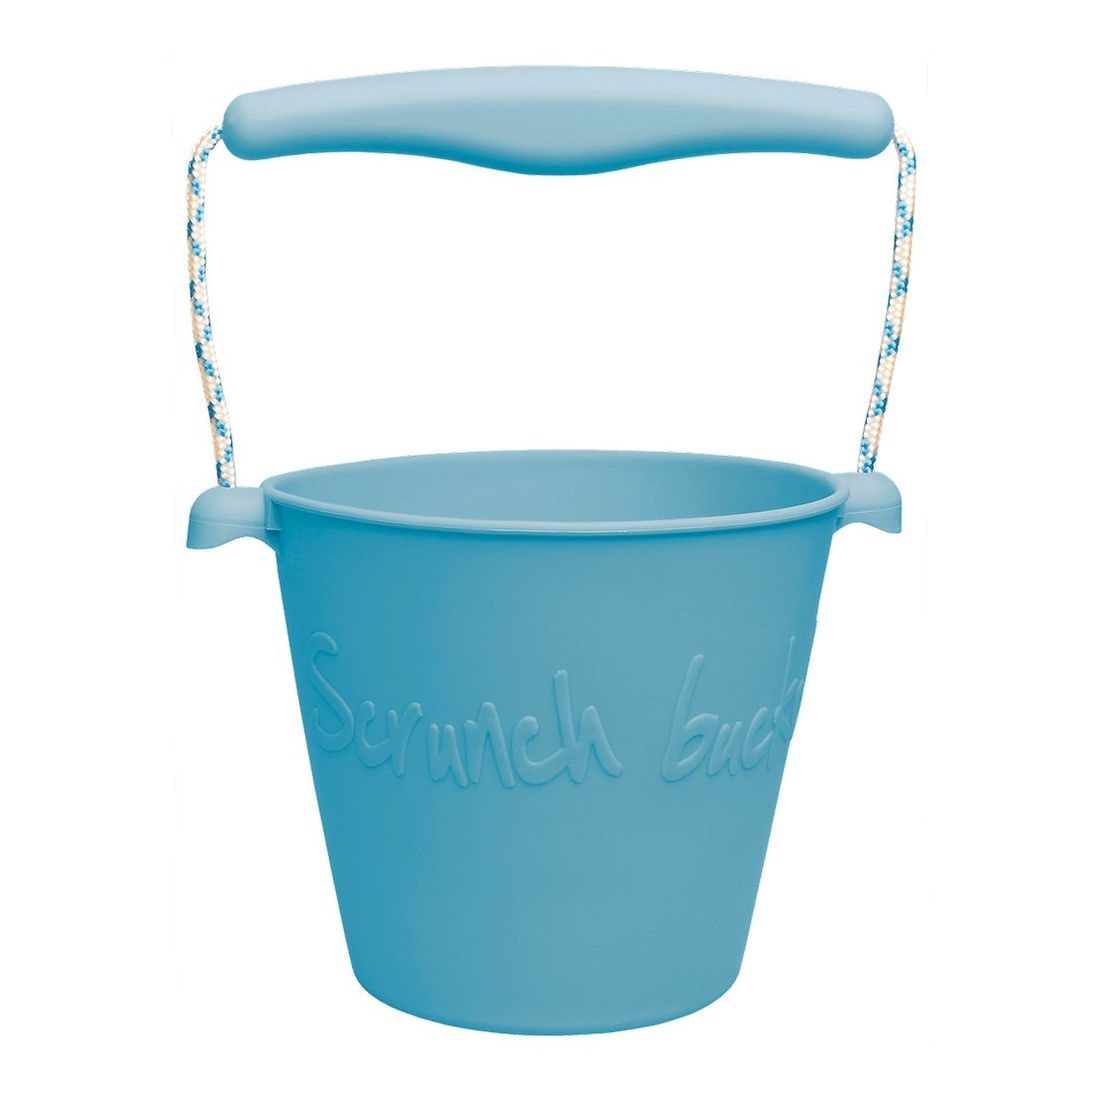 Scrunch Bucket Sand/Beach Toy - Petrol